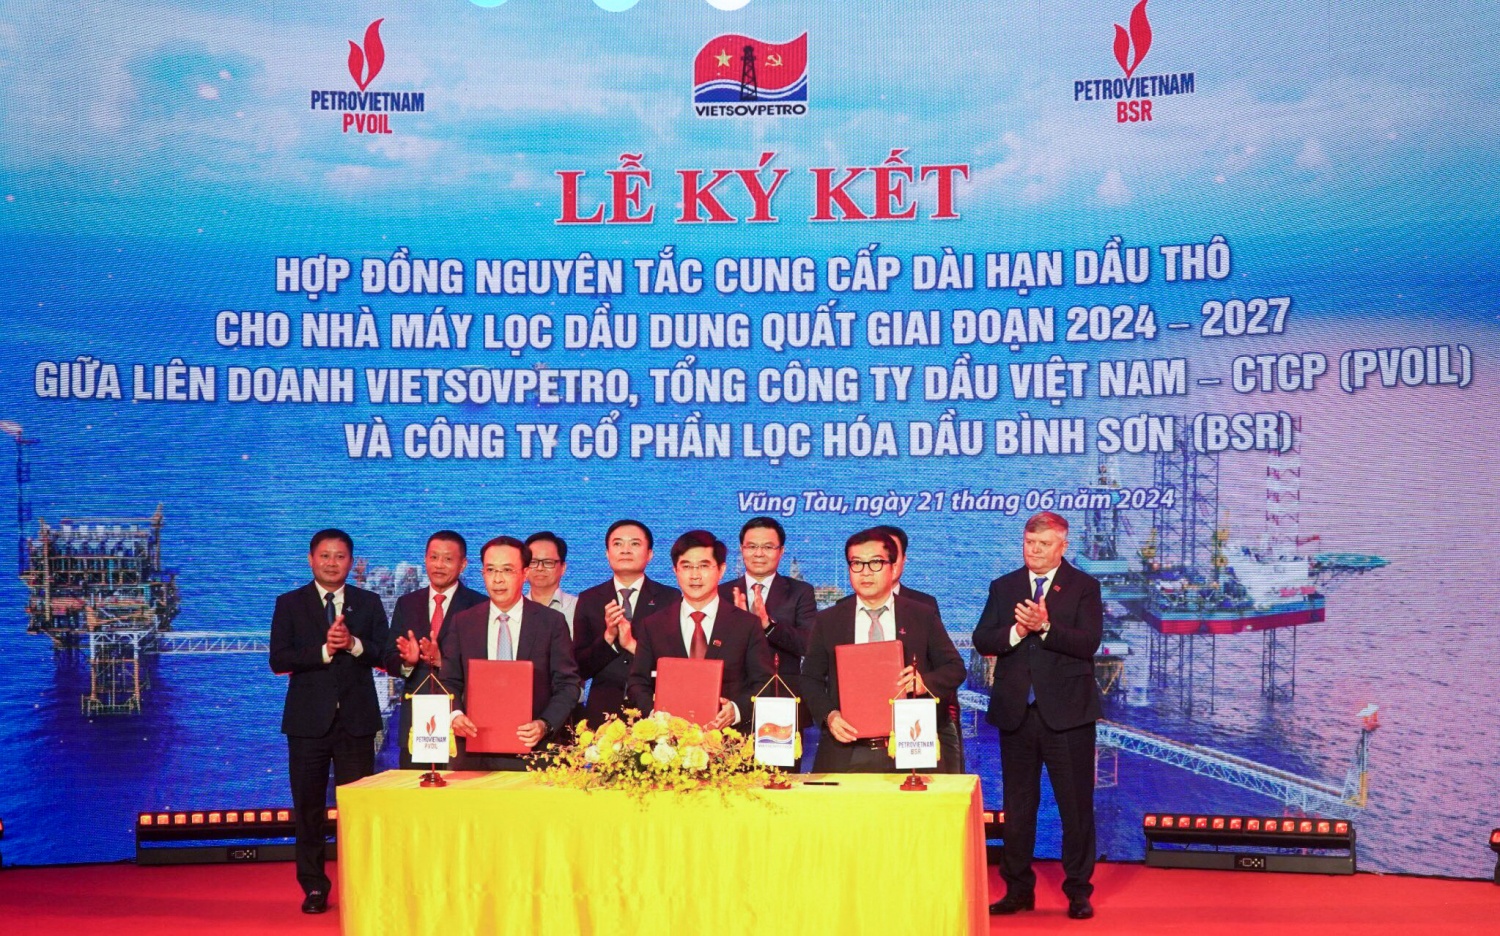 Vietsovpetro, PVOIL, BSR ký kết hợp đồng cung cấp dài hạn dầu thô cho NMLD Dung Quất